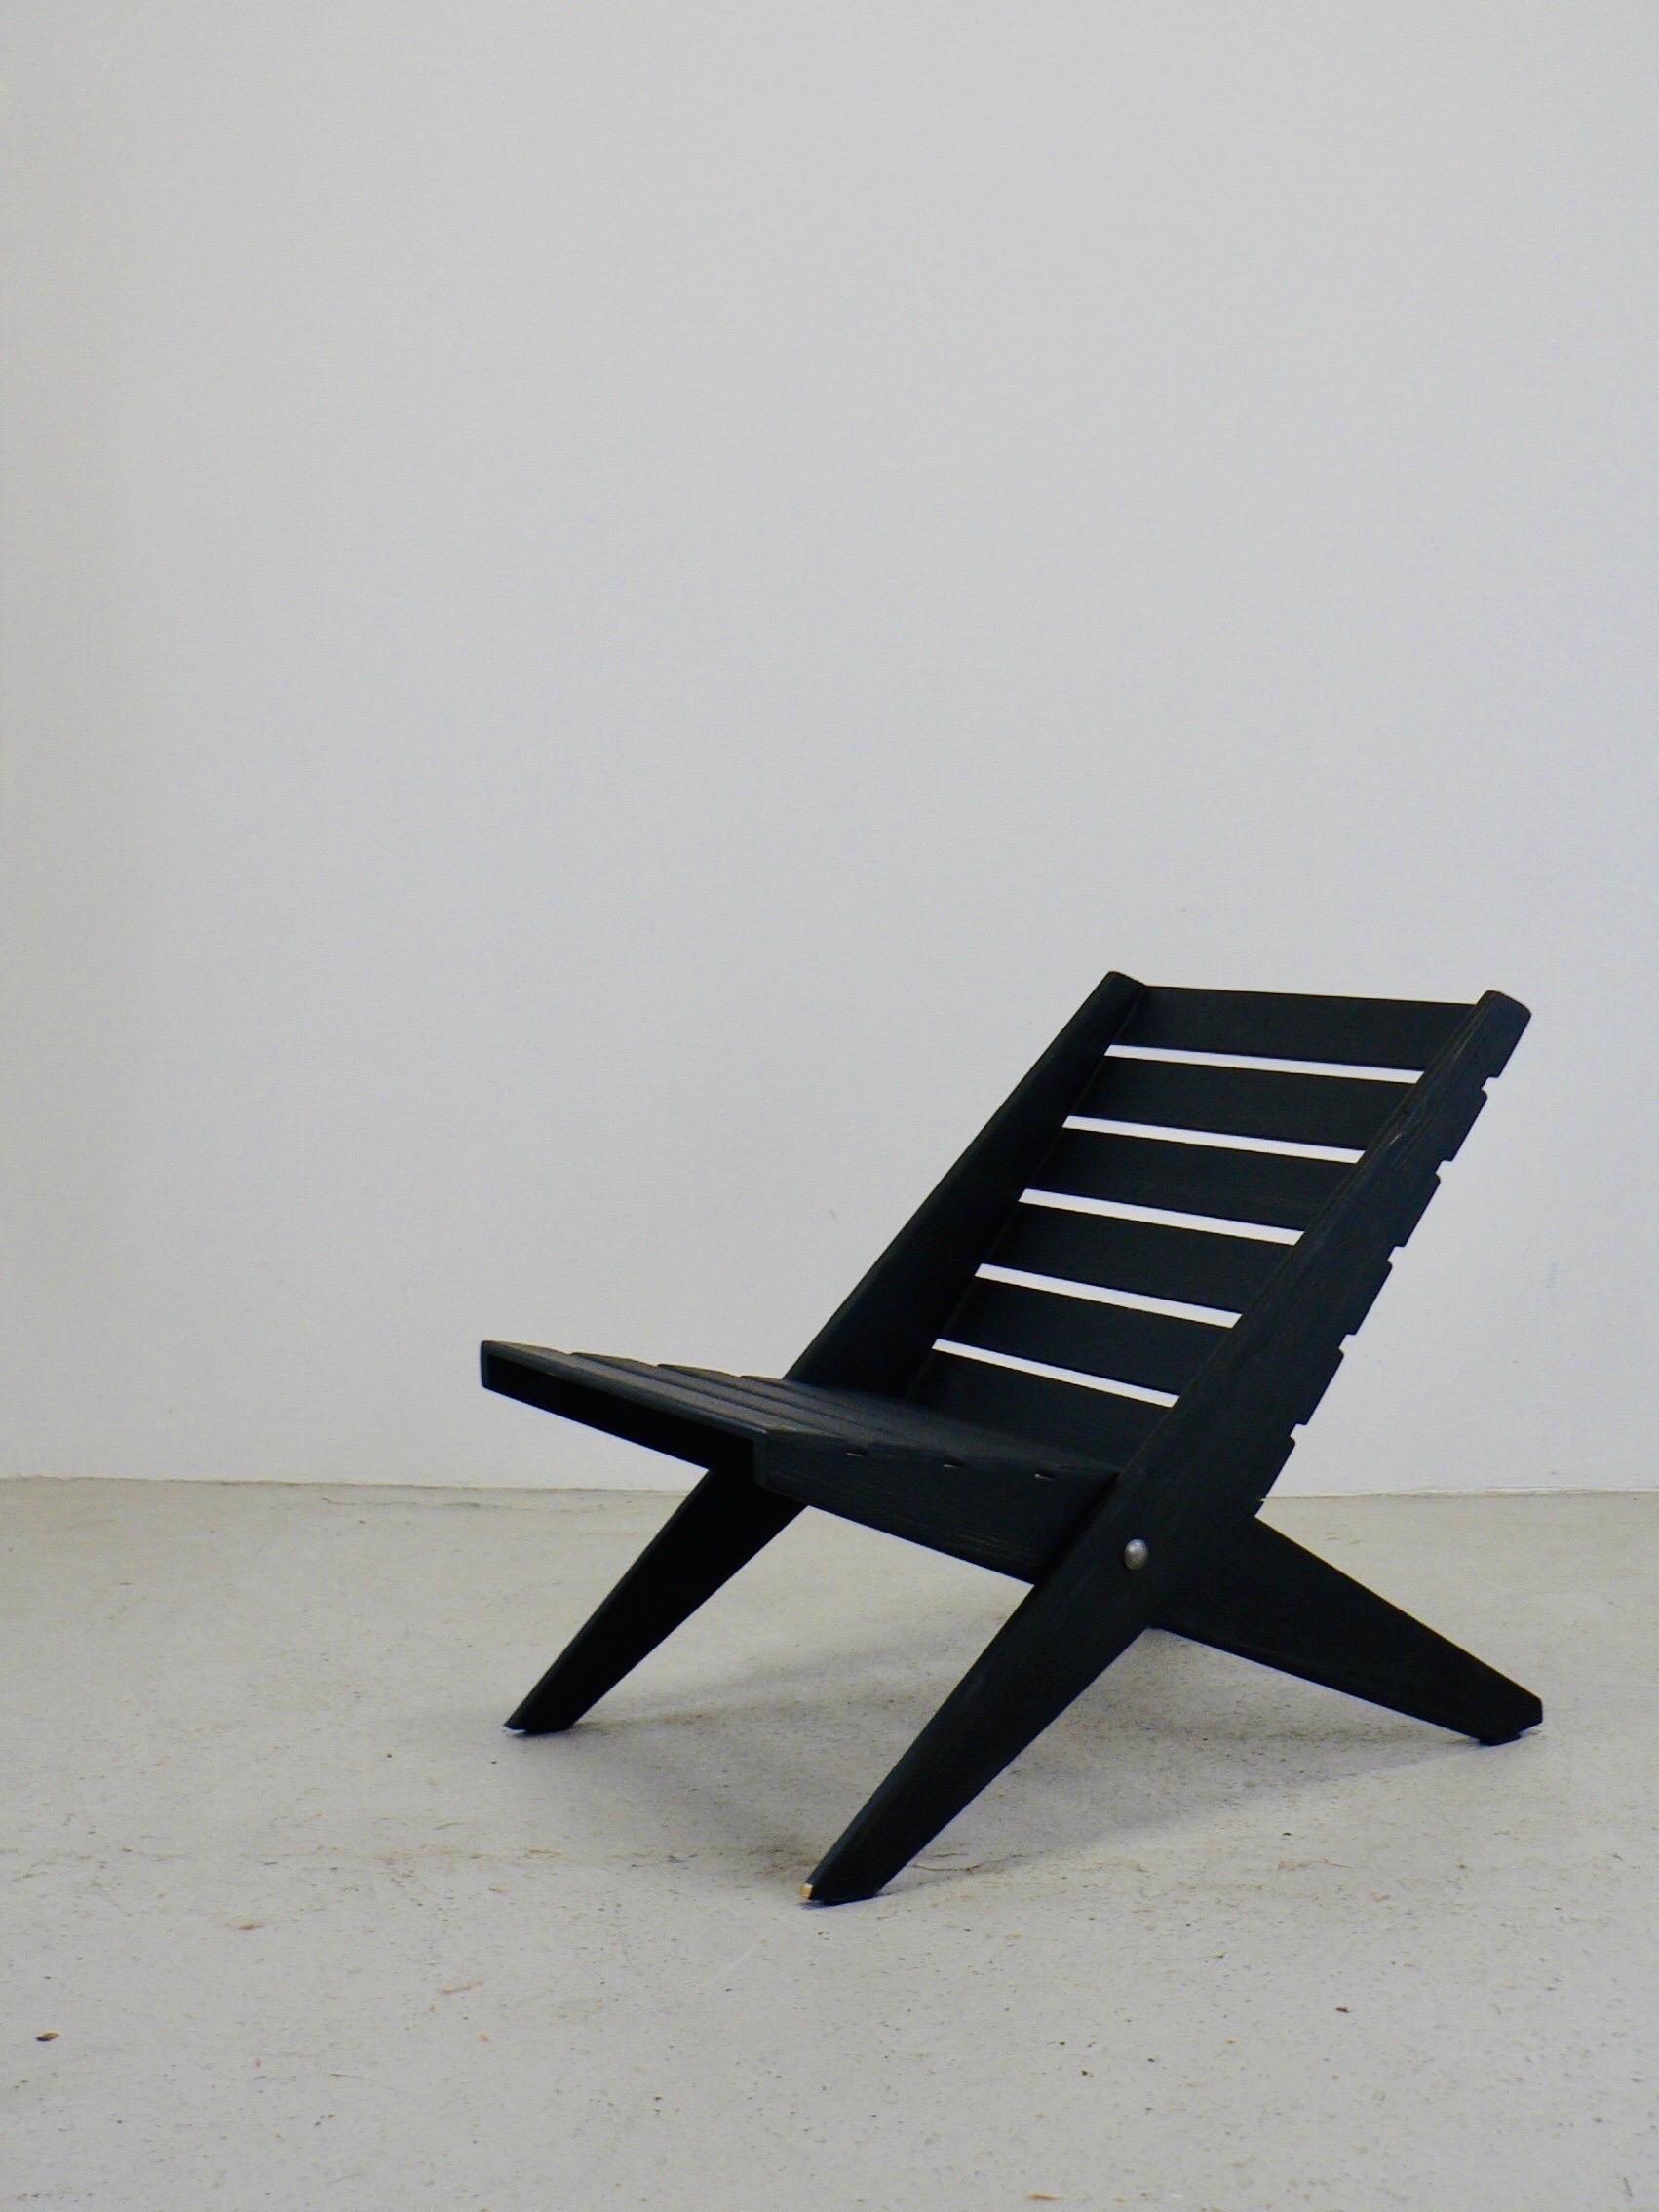 Une étonnante chaise pliante à ciseaux, à la fois décorative et fonctionnelle. Il bénéficie d'une construction très architecturale grâce à son design minimaliste, d'une simplicité visuellement frappante. Cette chaise peut être utilisée comme siège